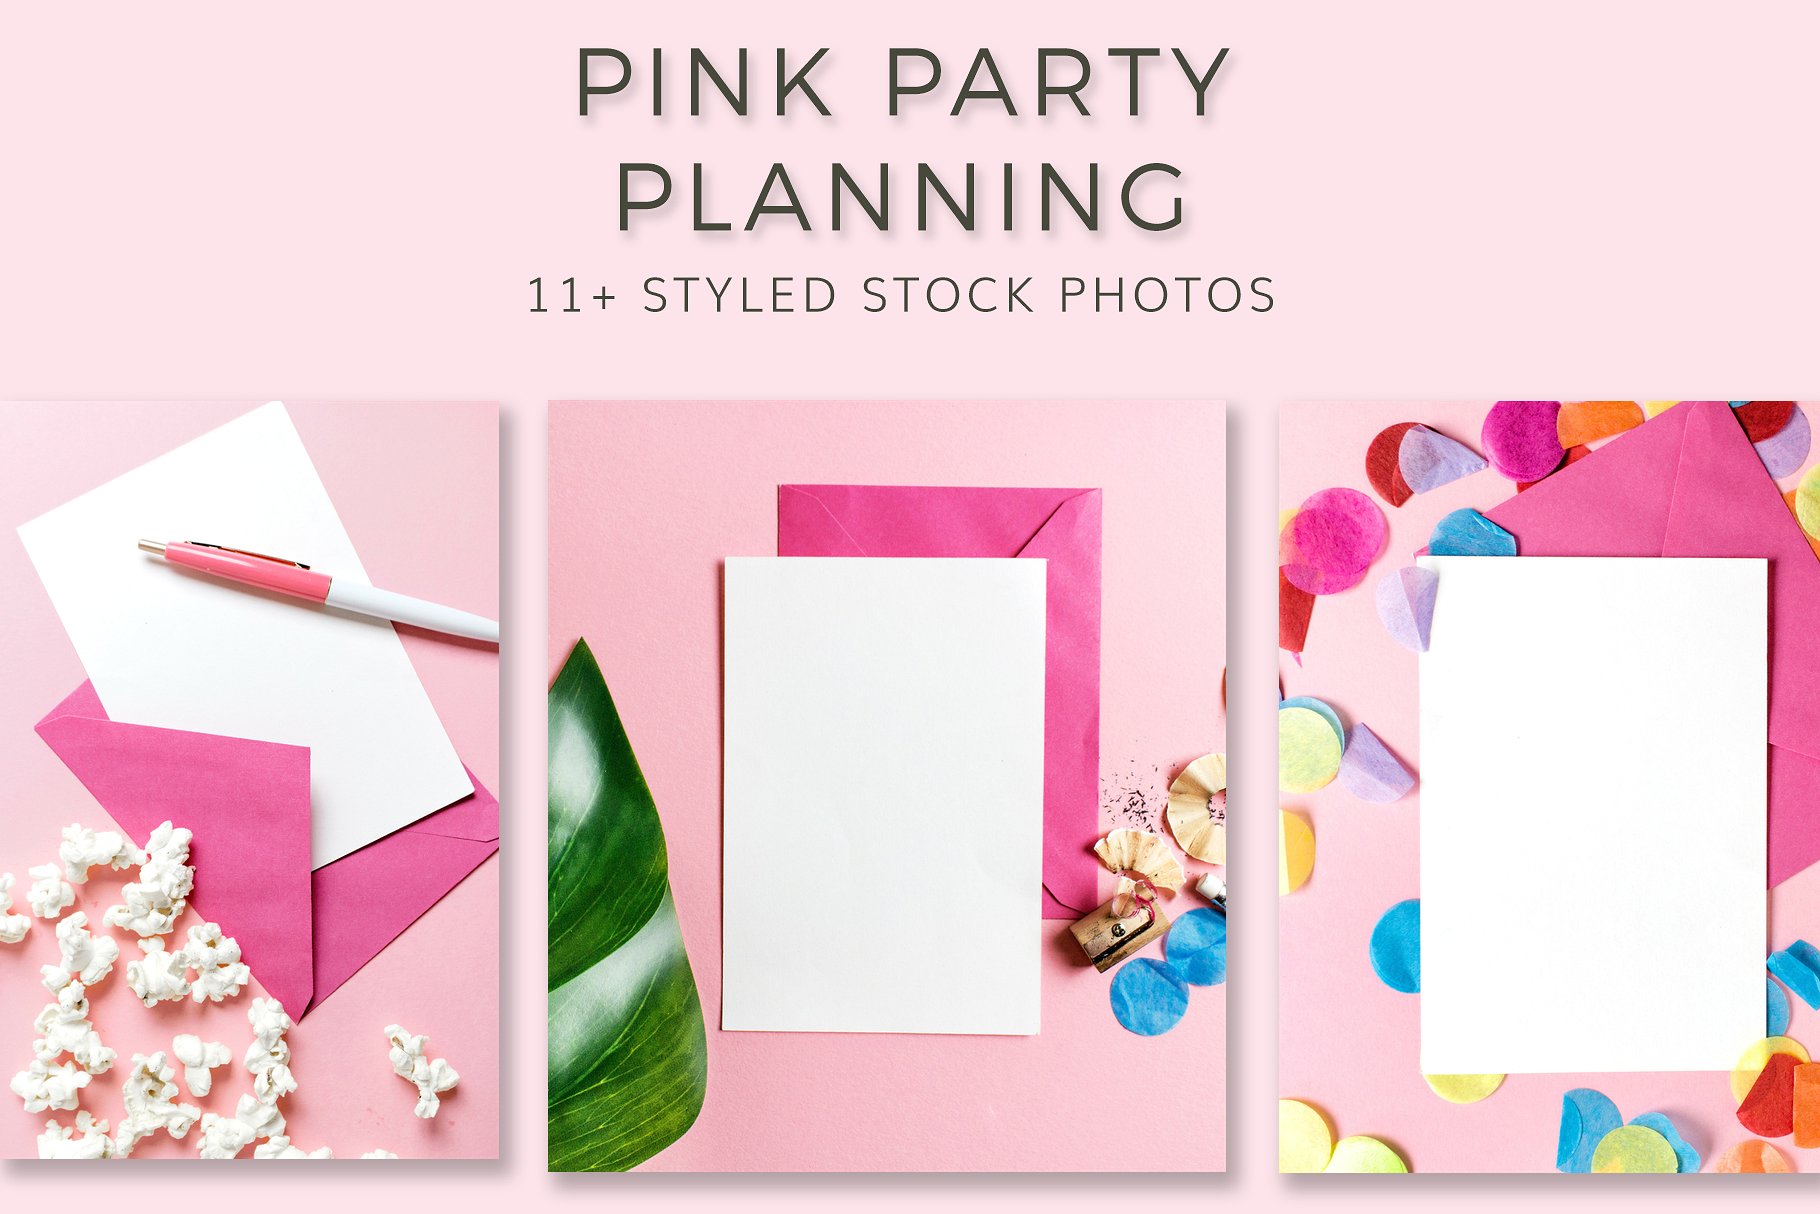 粉红派对样式化图形模板 Pink Party Stationary Bundle插图